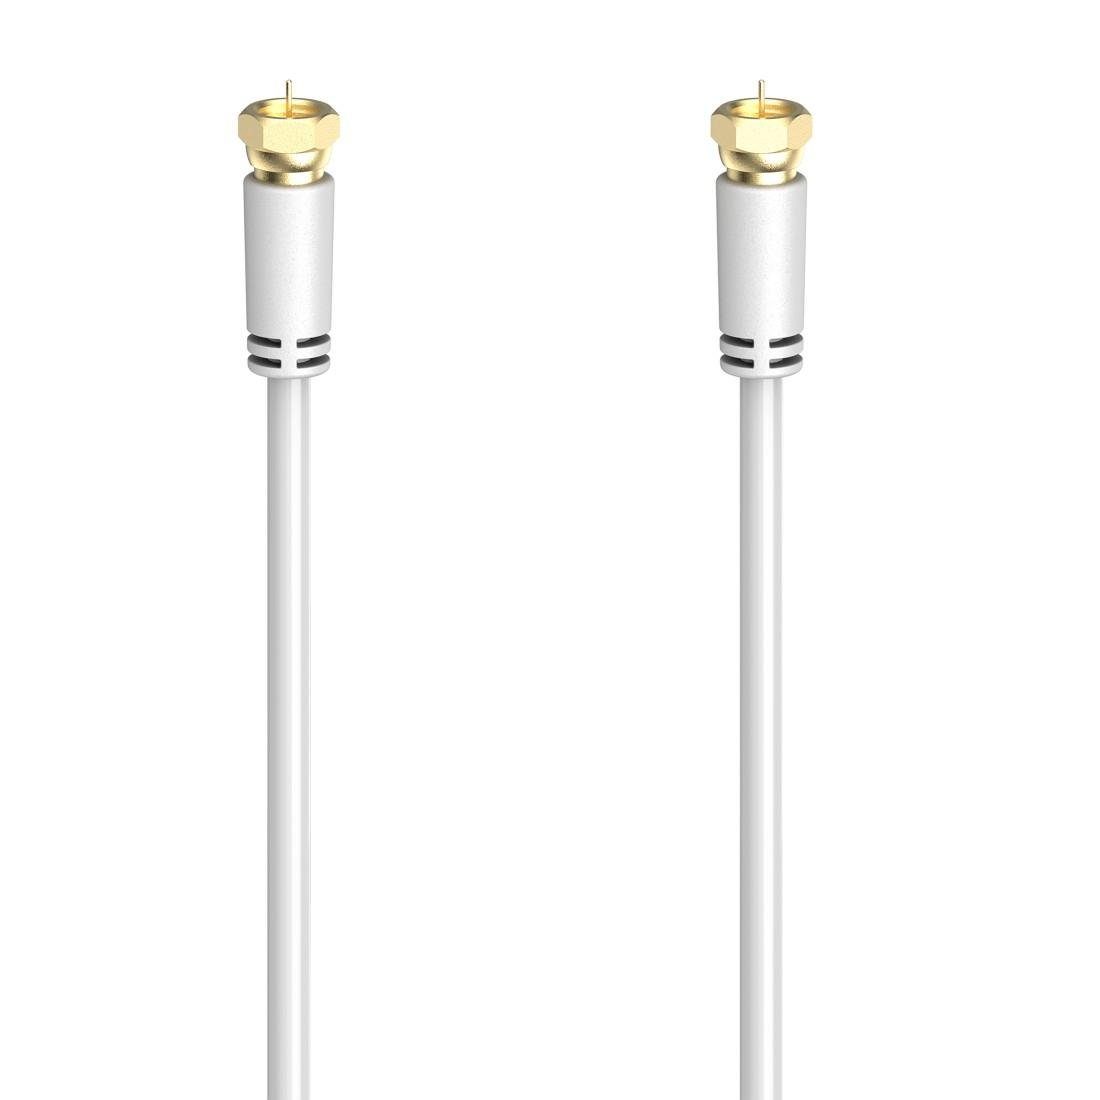 Hama SAT-Anschlusskabel,F-Stecker -F-Stecker,1,5 - 5m dB,Weiß 100 cm) vergoldet (150 SAT-Kabel